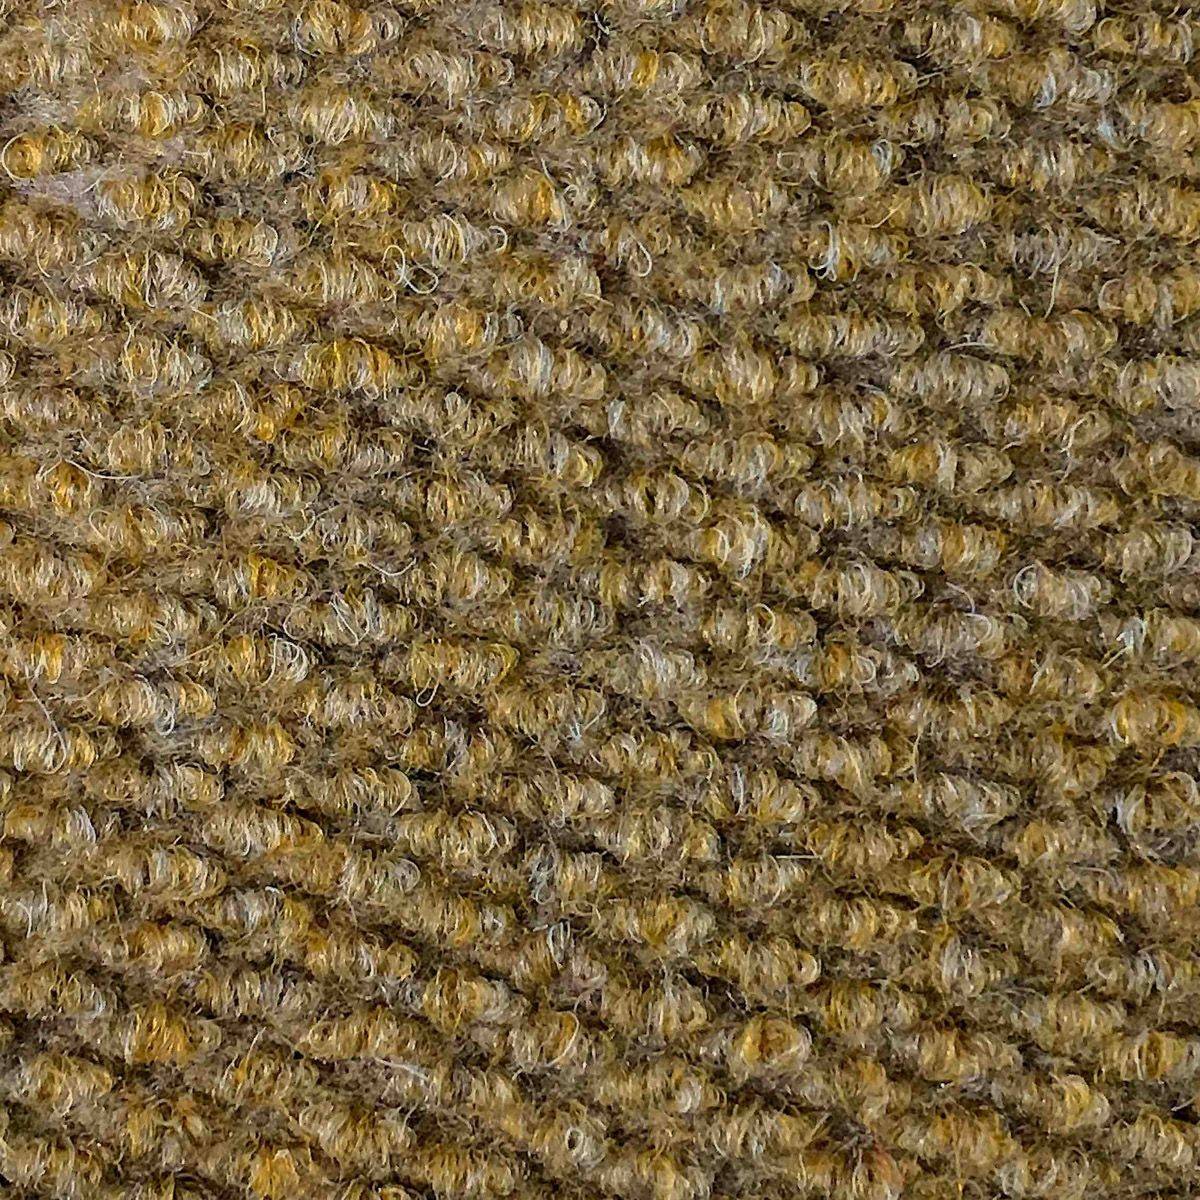 Heckmondwike Hobnail Carpet Tile Pebble 50 X 50 cm